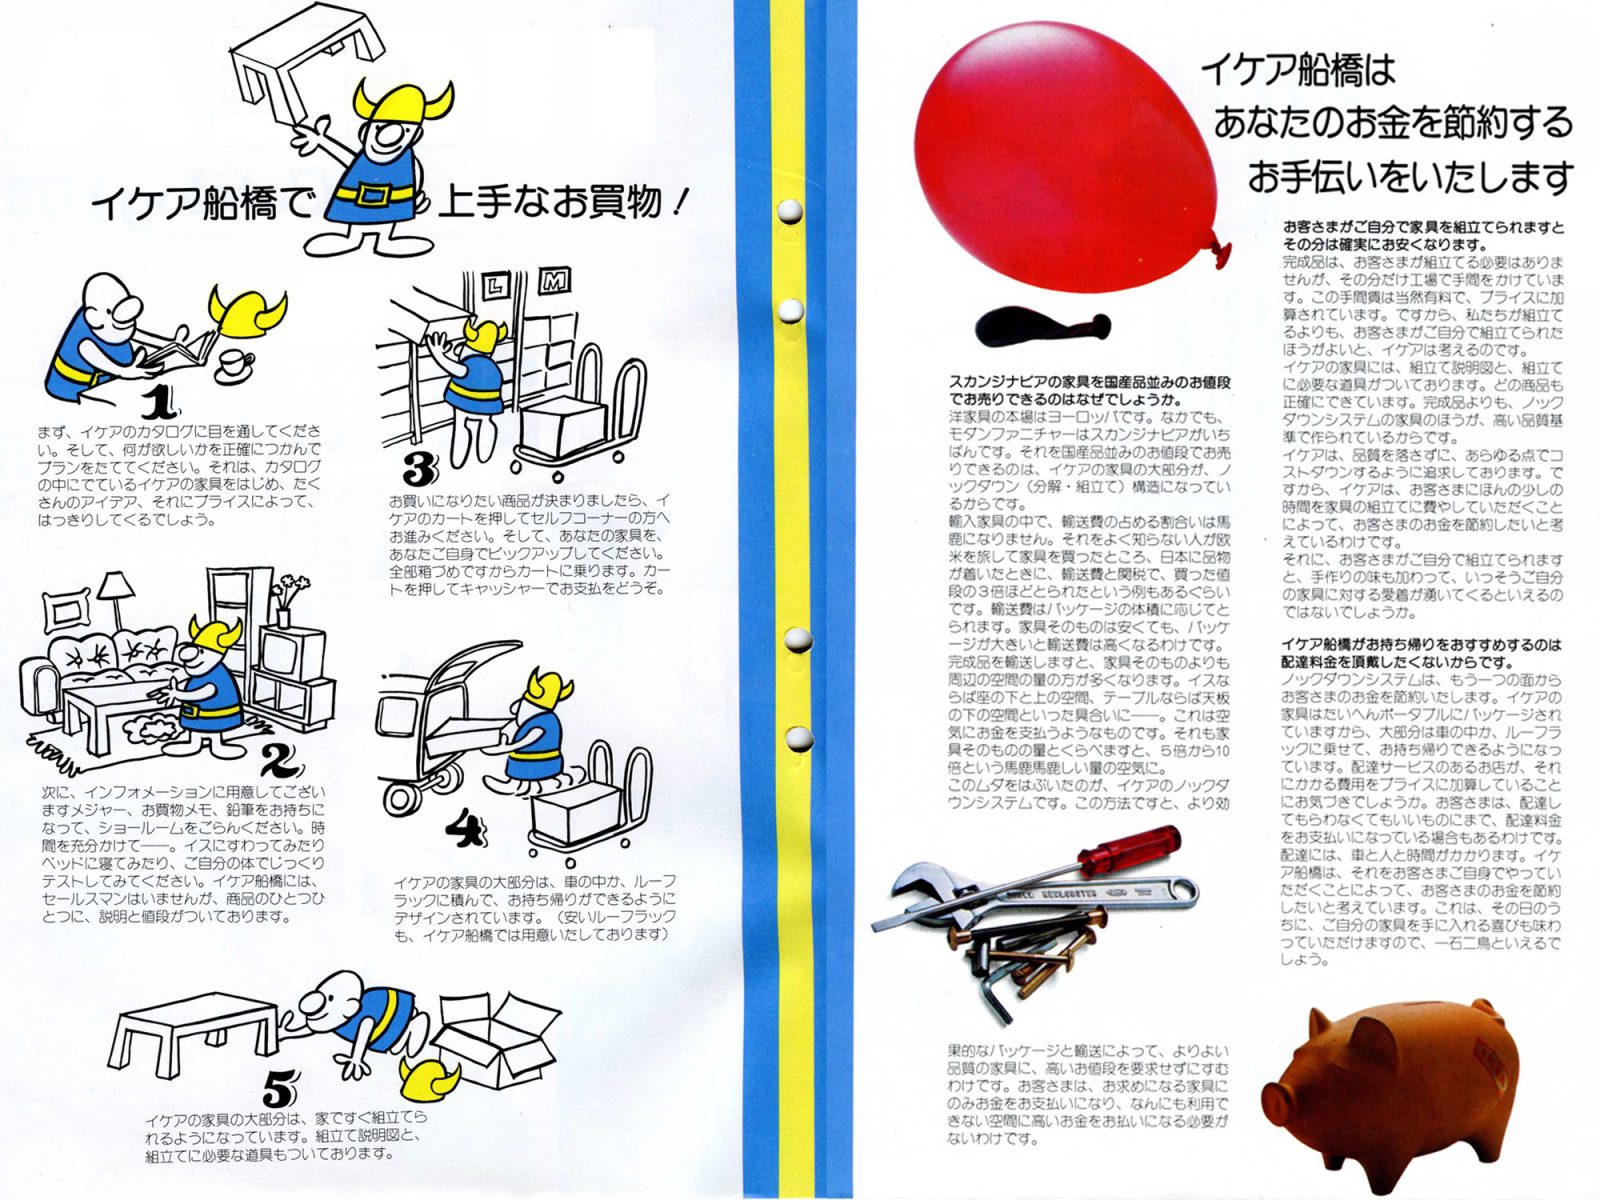 Faksimil av två sidor från 1978 års japanska IKEA katalog, en sida har shoppinginstruktioner.